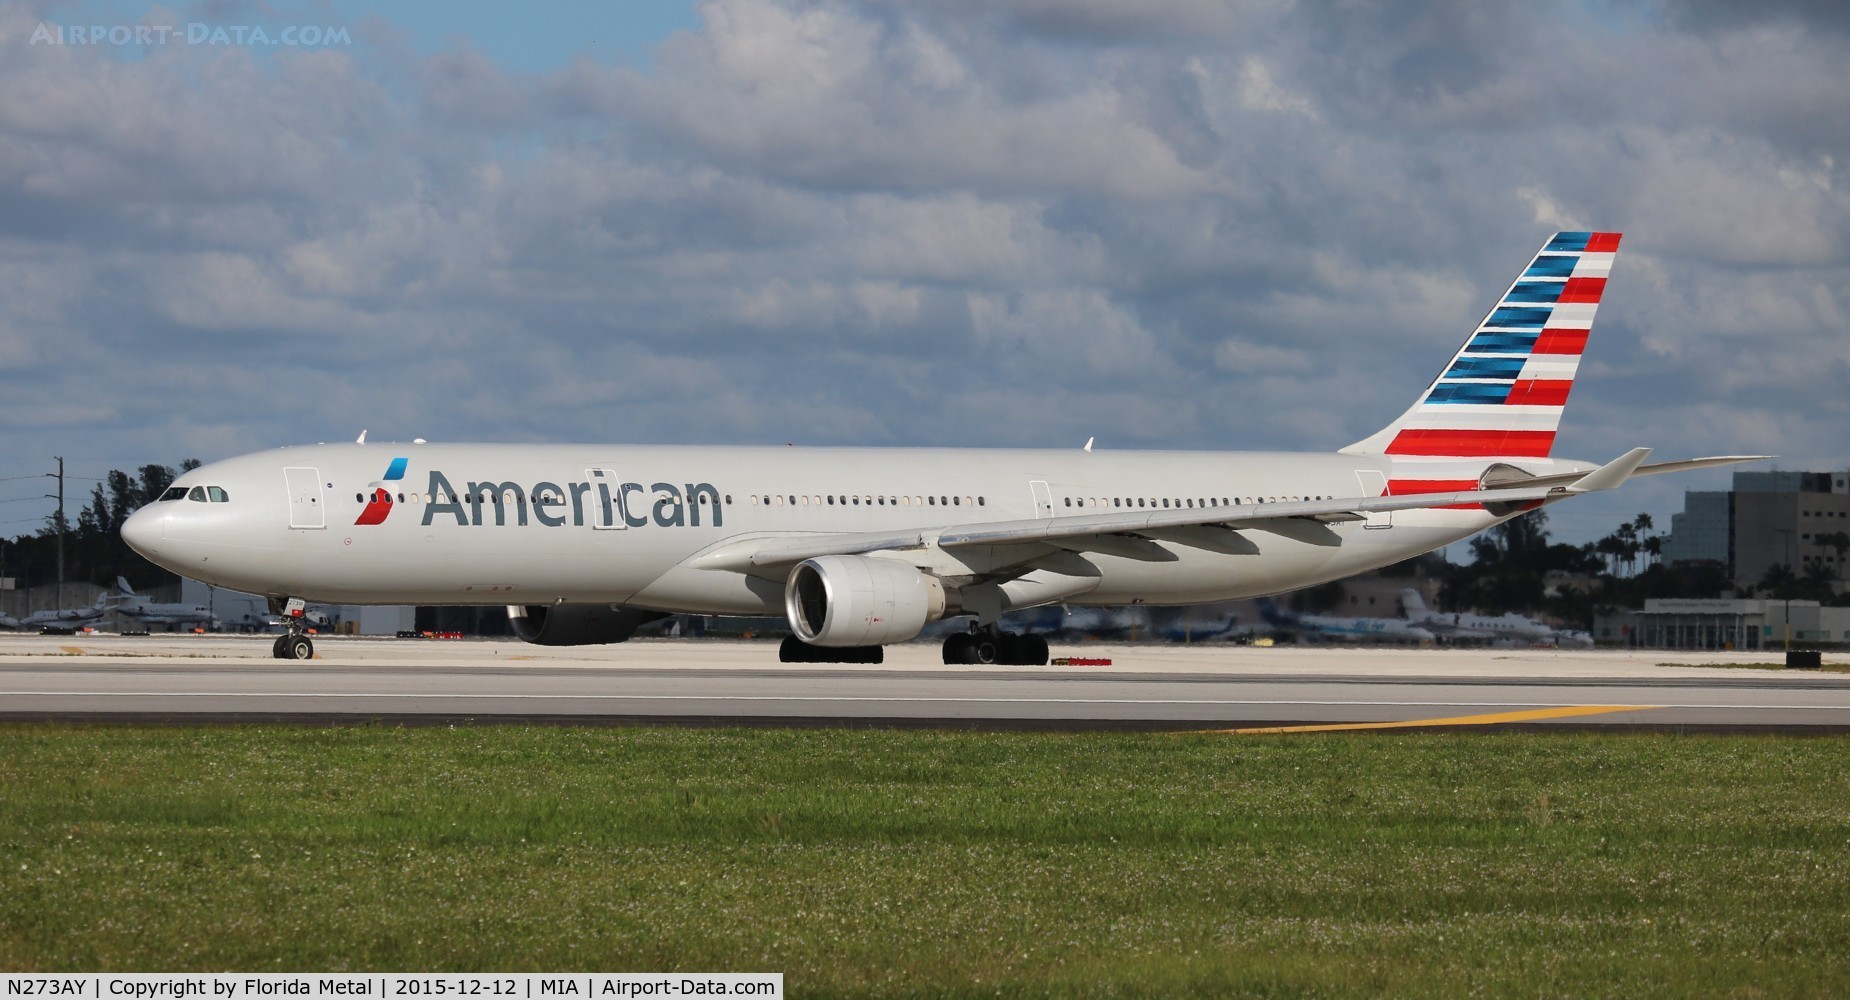 N273AY, 2000 Airbus A330-323 C/N 337, American